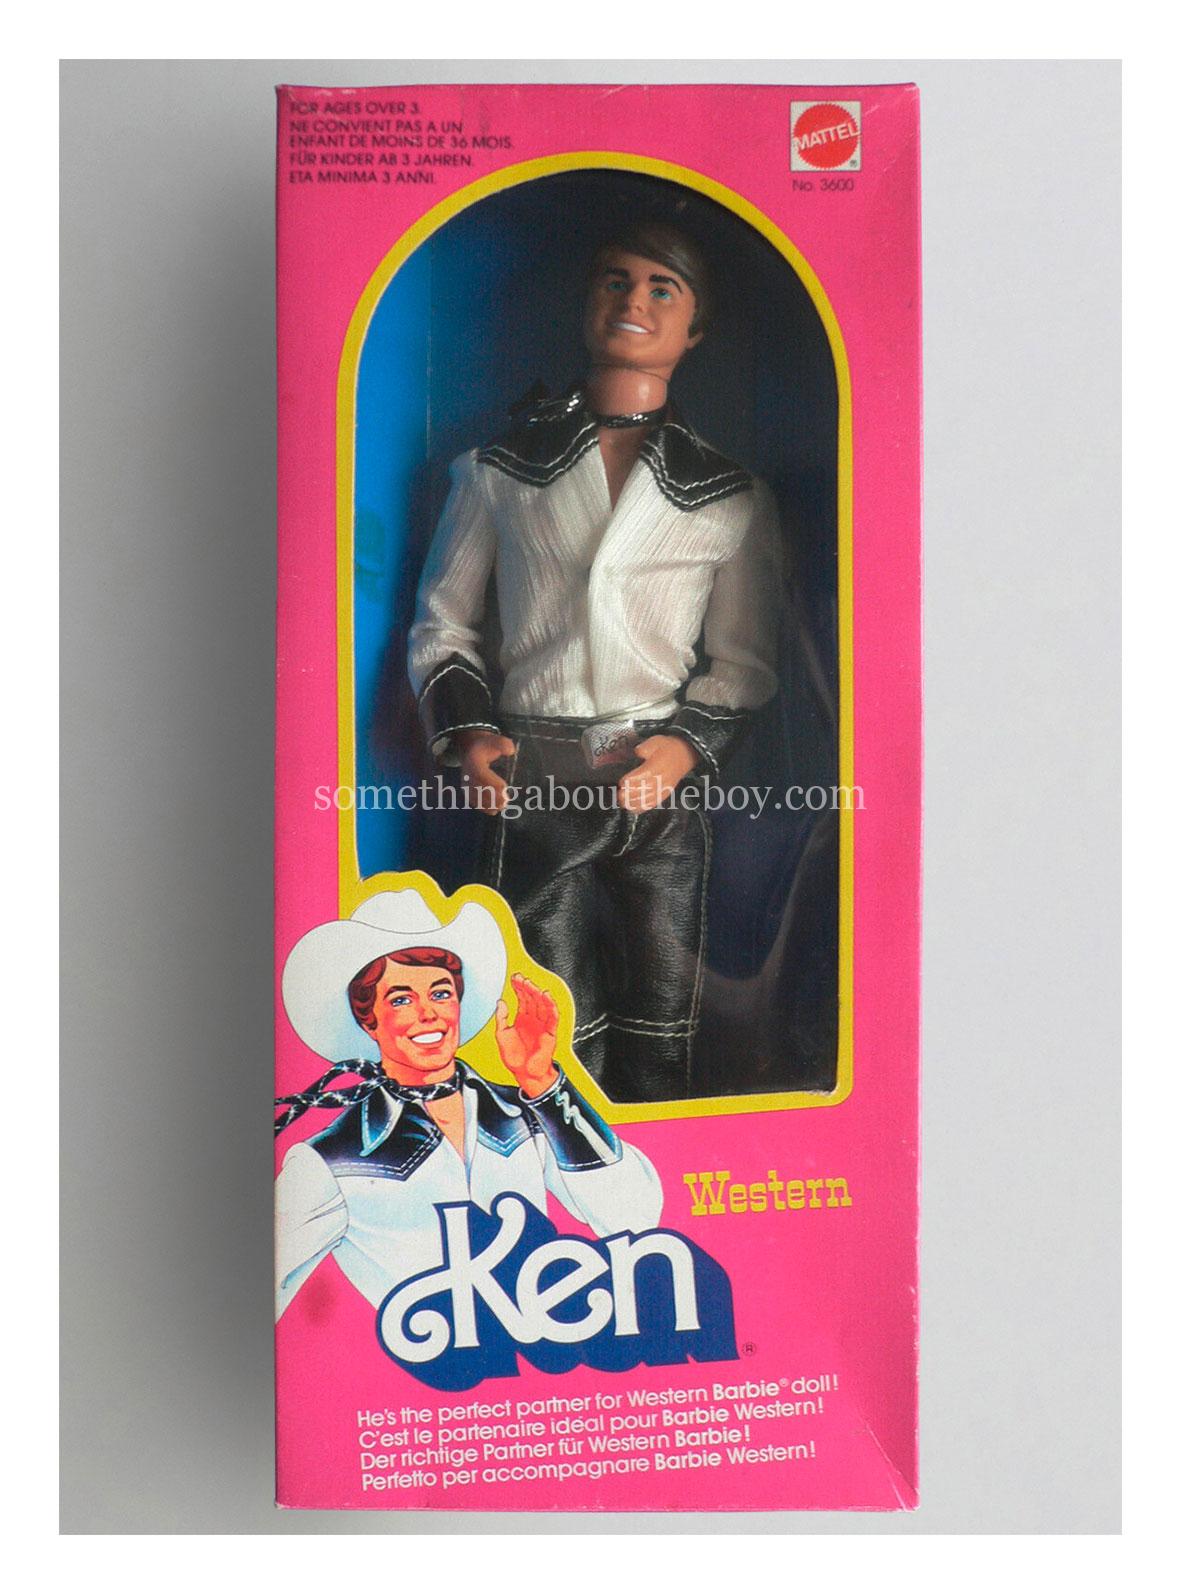 1981 #3600 Western Ken in European packaging